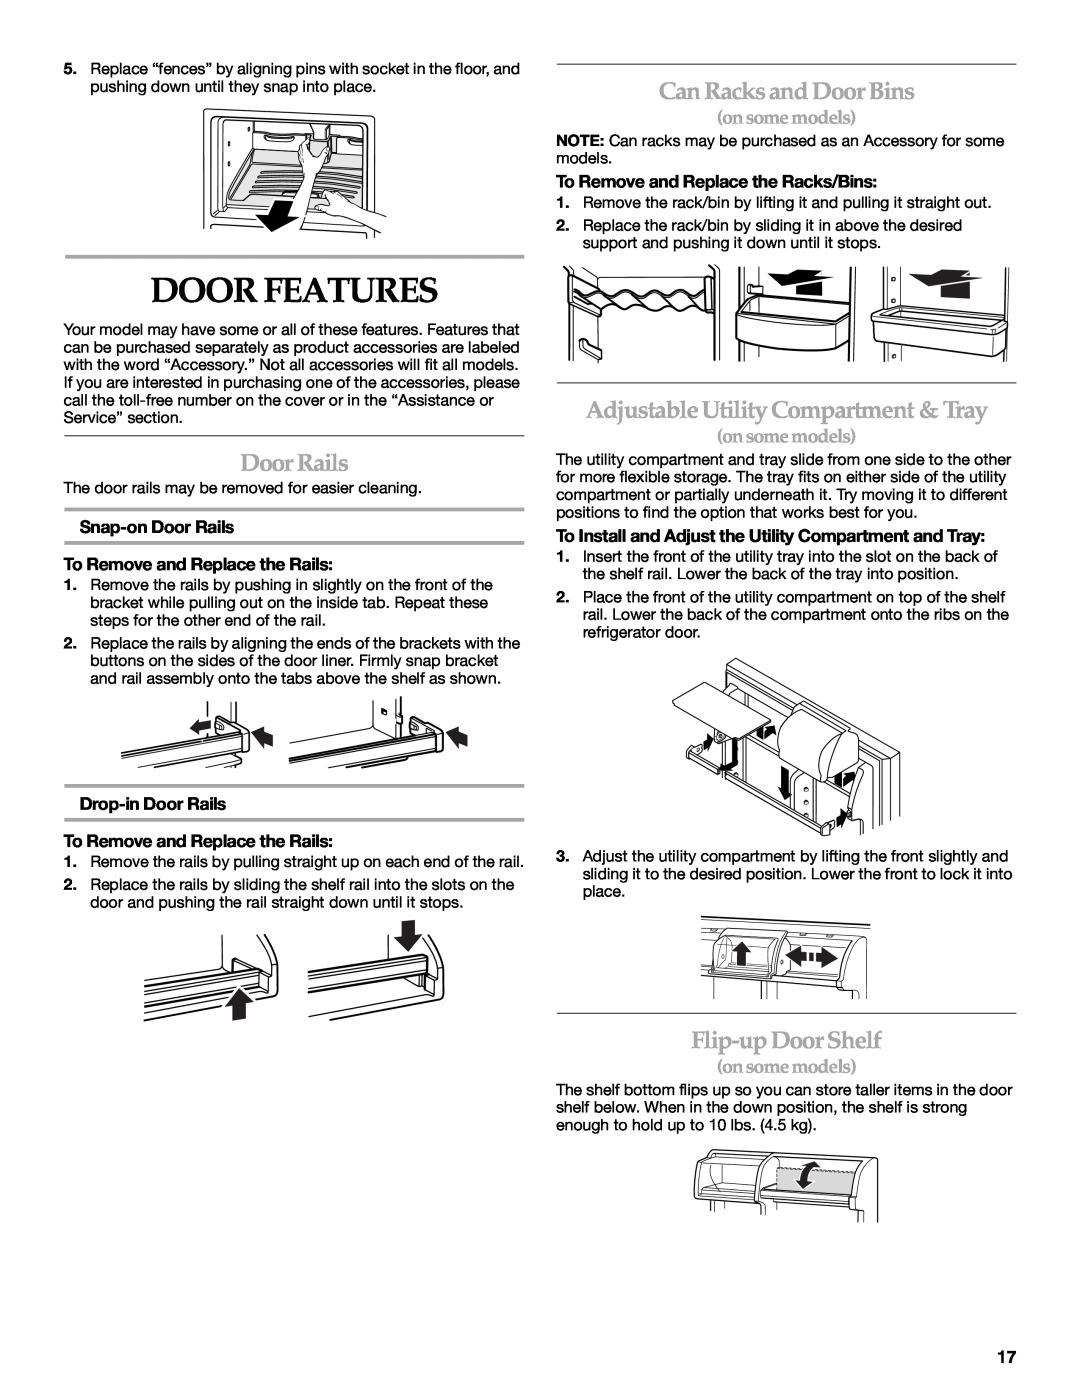 KitchenAid TOP-MOUNT REFRIGERATOR Door Features, Can Racksand Door Bins, Door Rails, Adjustable Utility Compartment & Tray 